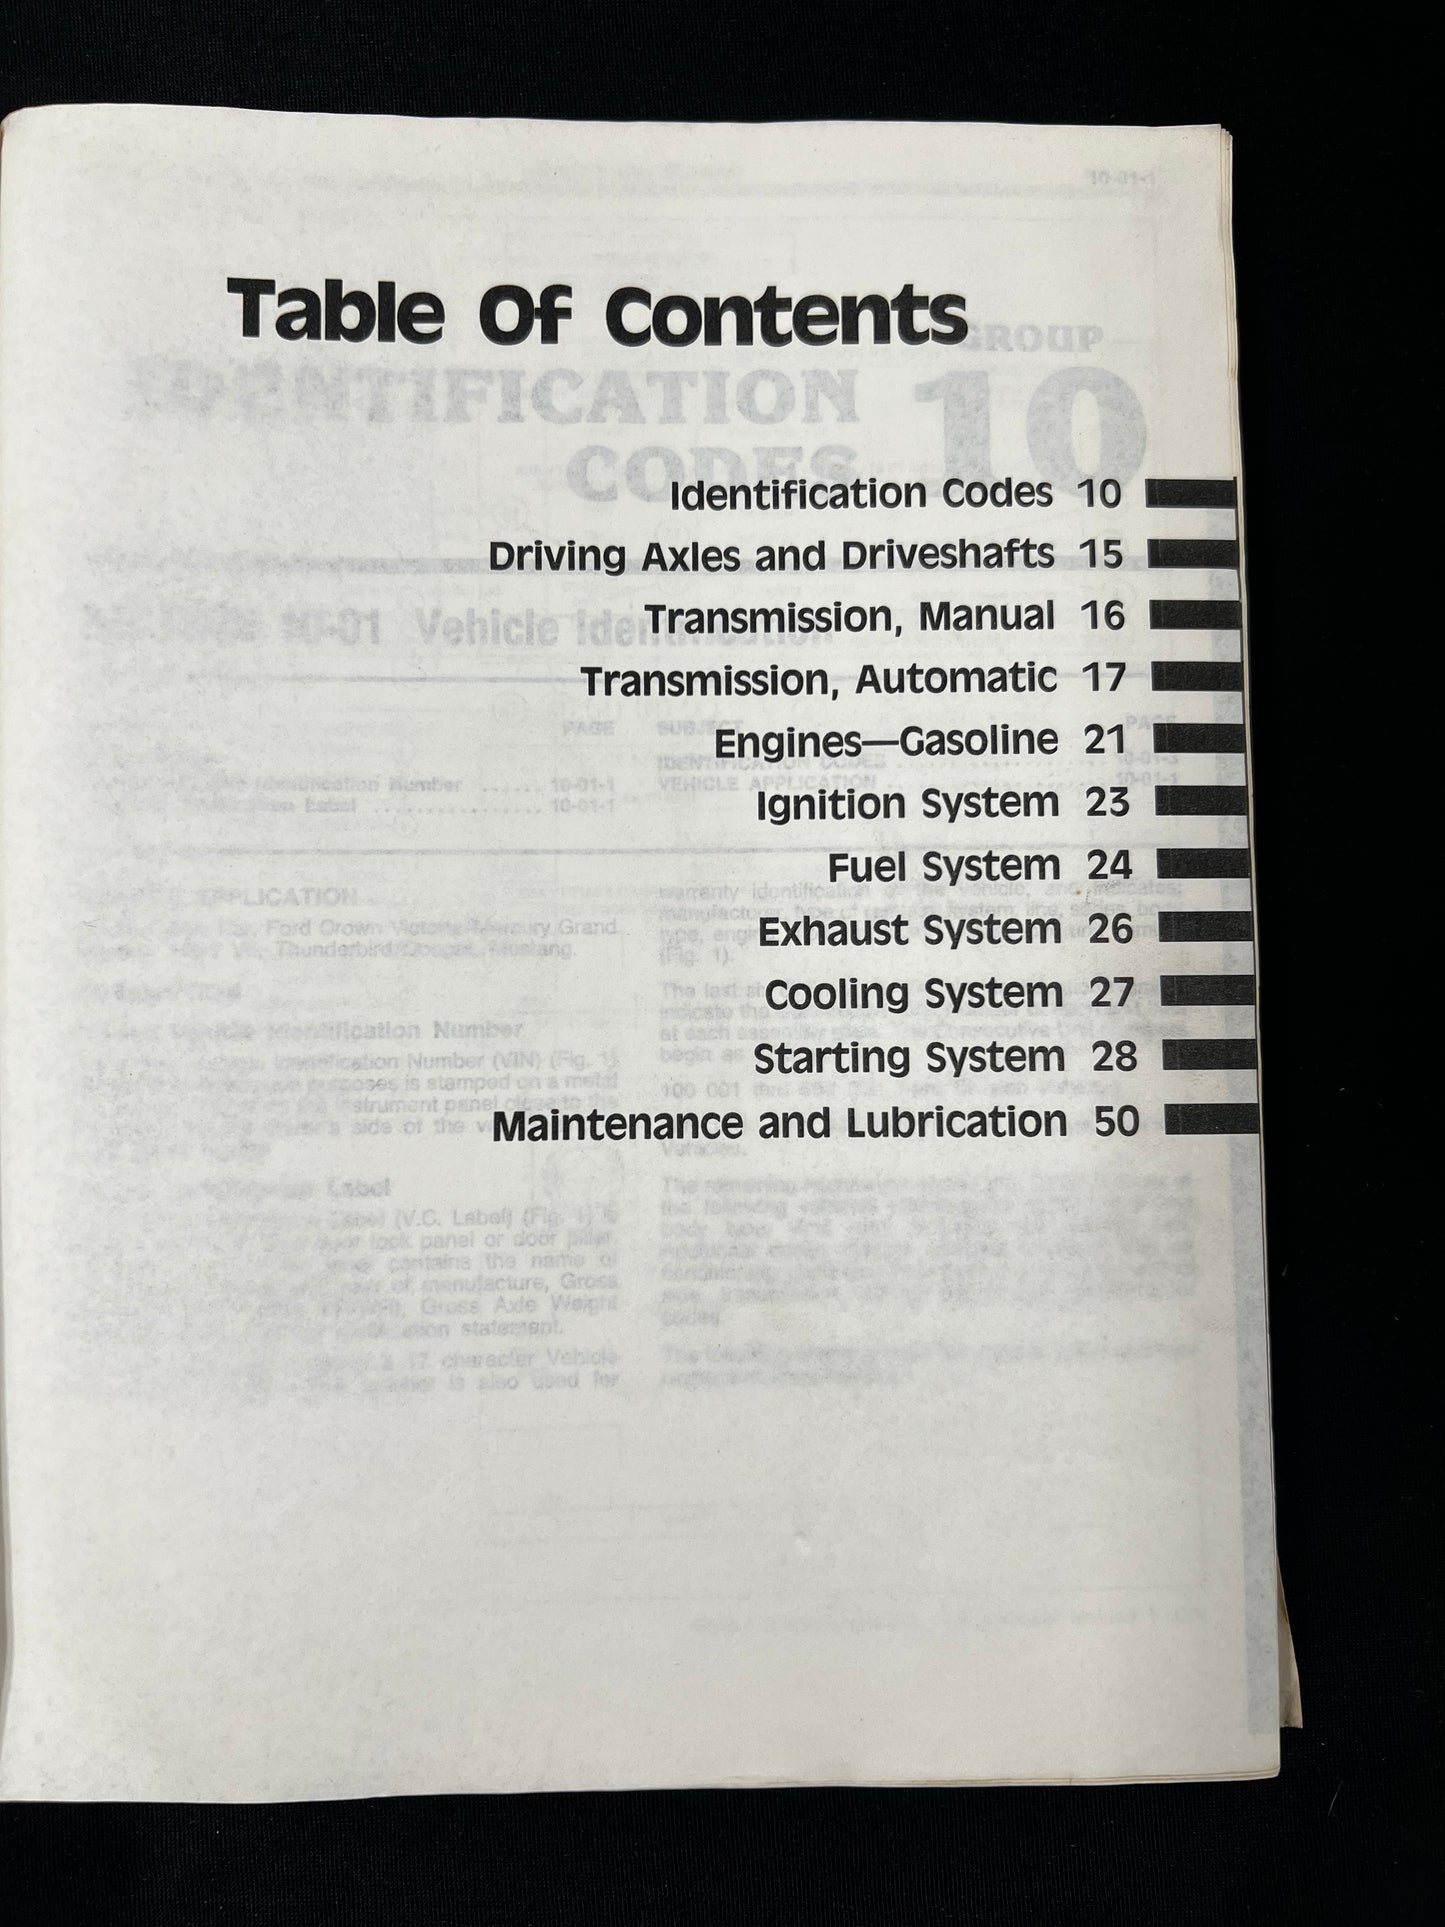 Ford 1988 Car Shop Manual volume D: Powertrain- Lincoln Town Car, Ford Crown Victoria, Mercury Grand Marquis, Mark VII, Thunderbird/Cougar, Mustang